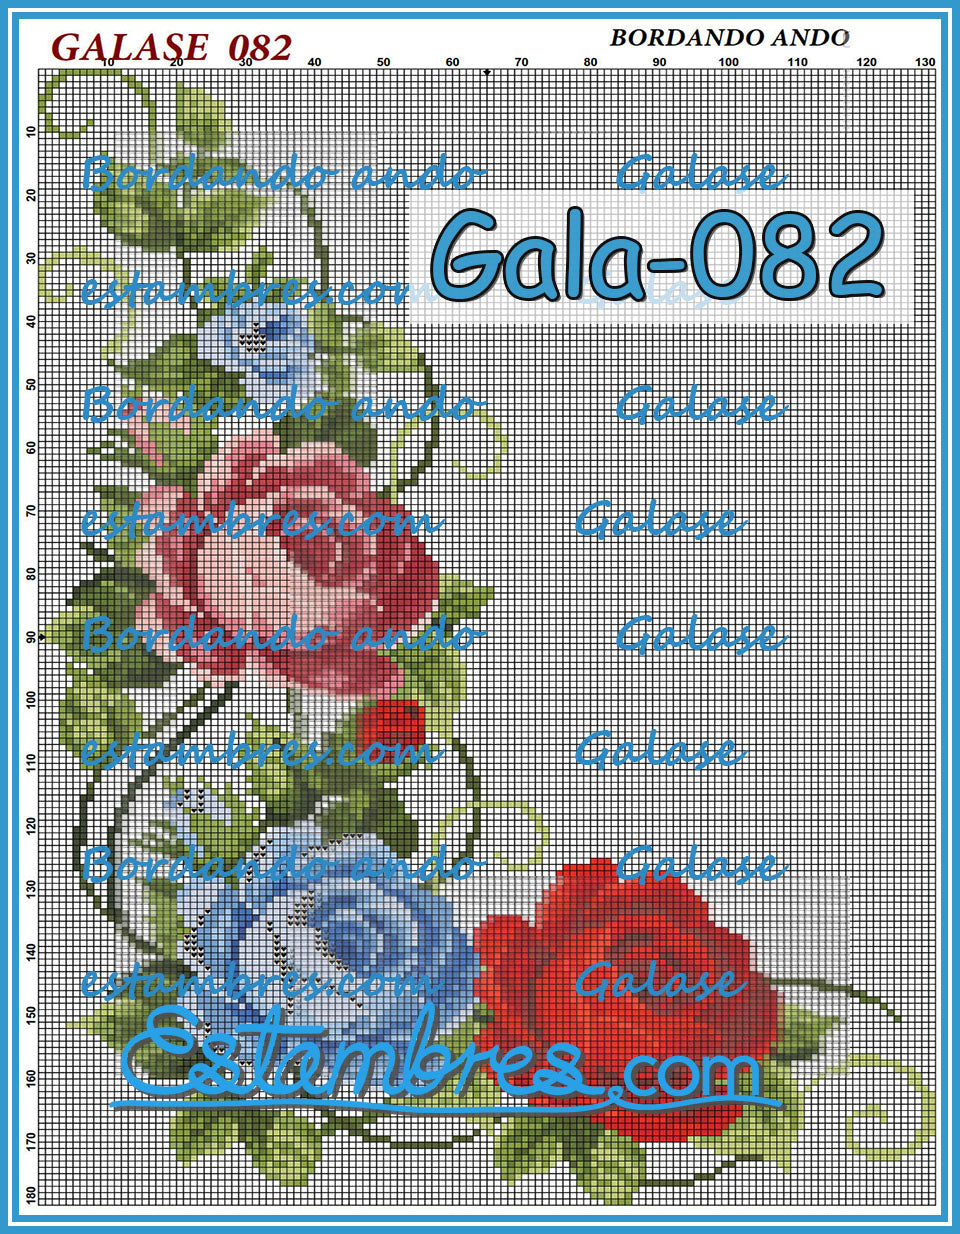 GALASE [071-140] - 2 of 7